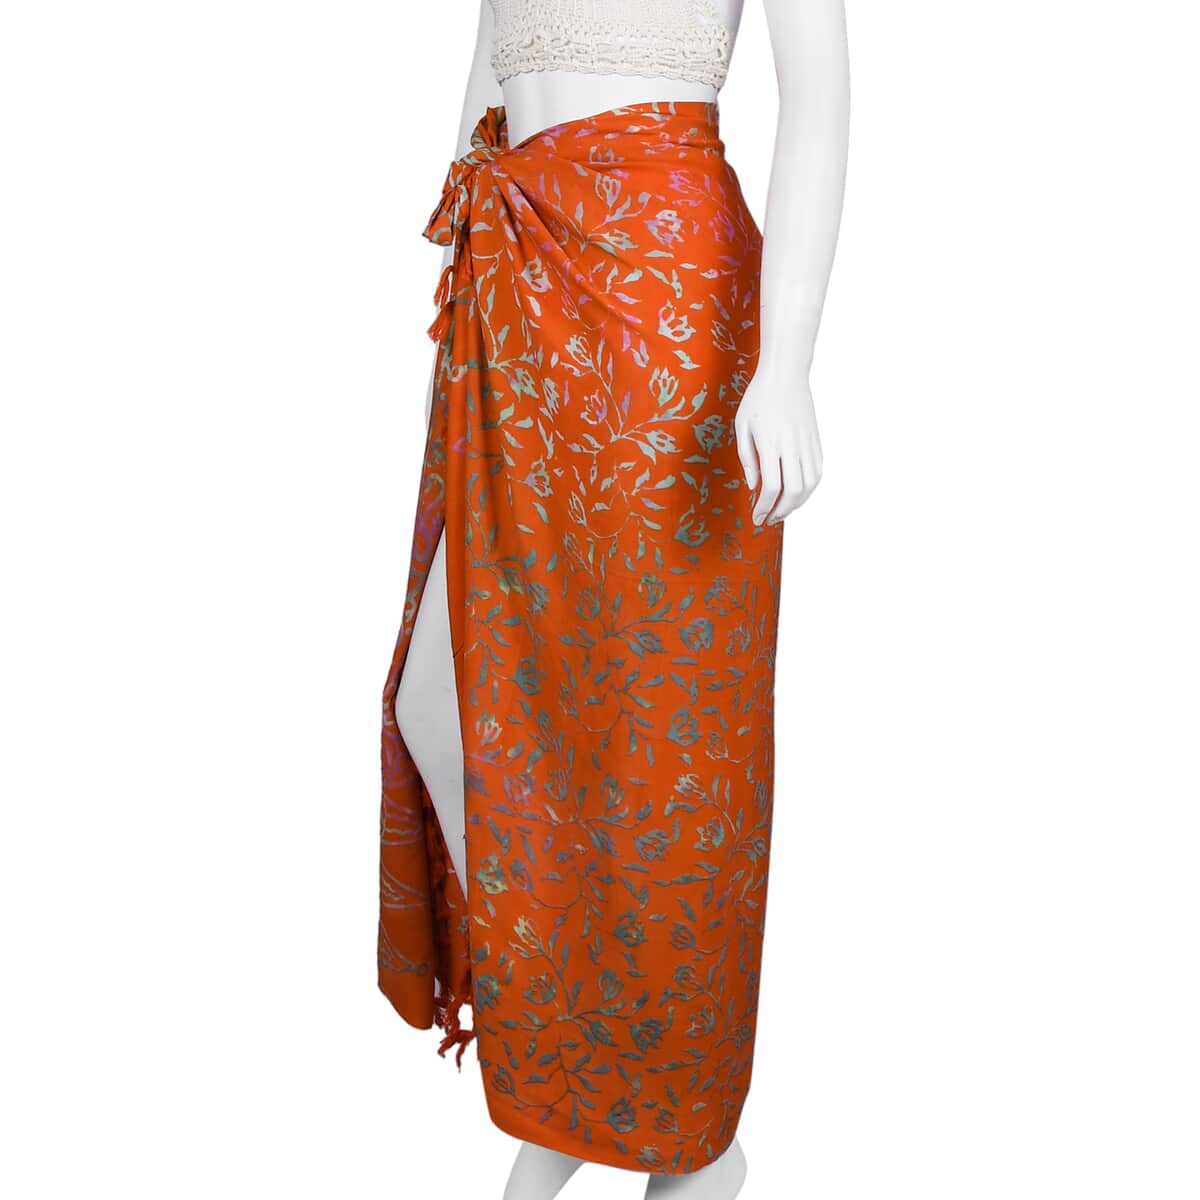 Handmade Golden Orange Floral Motif Pattern 100% Rayon Sarong | Women's Saron Wrap | Sarong Skirt | Beach Sarong Cover Up image number 3